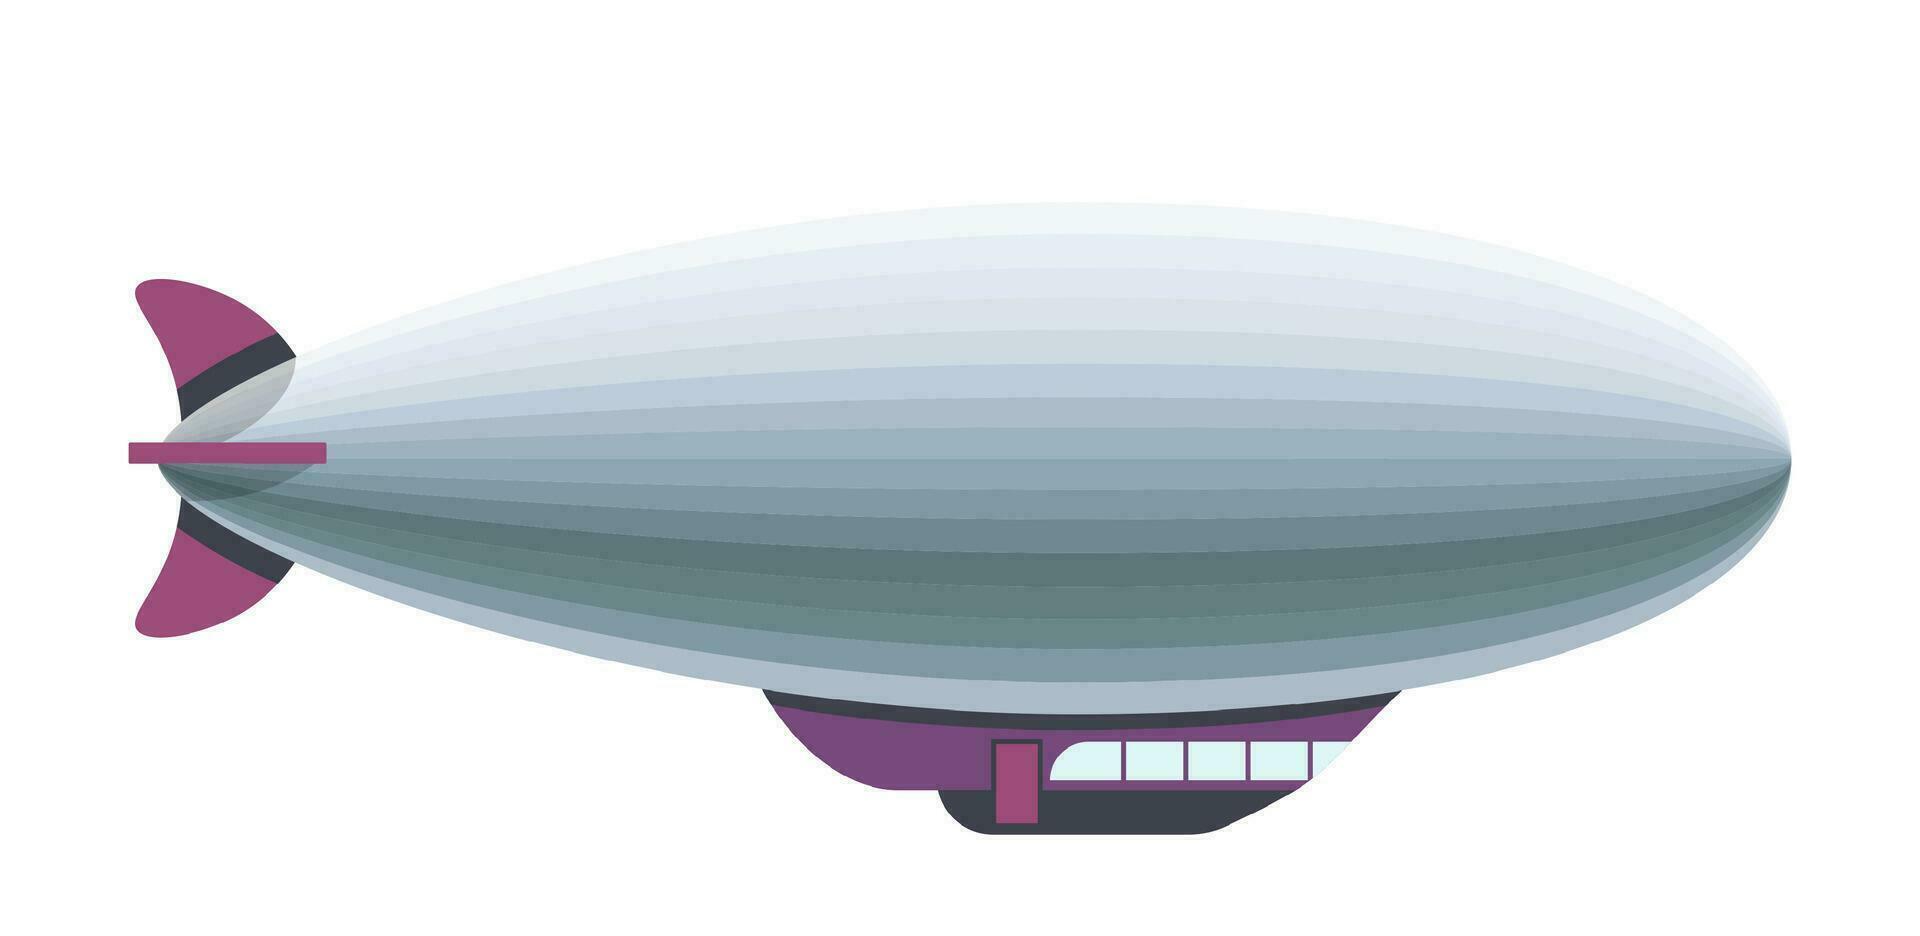 Retro dirigible, vintage airship or plane vector